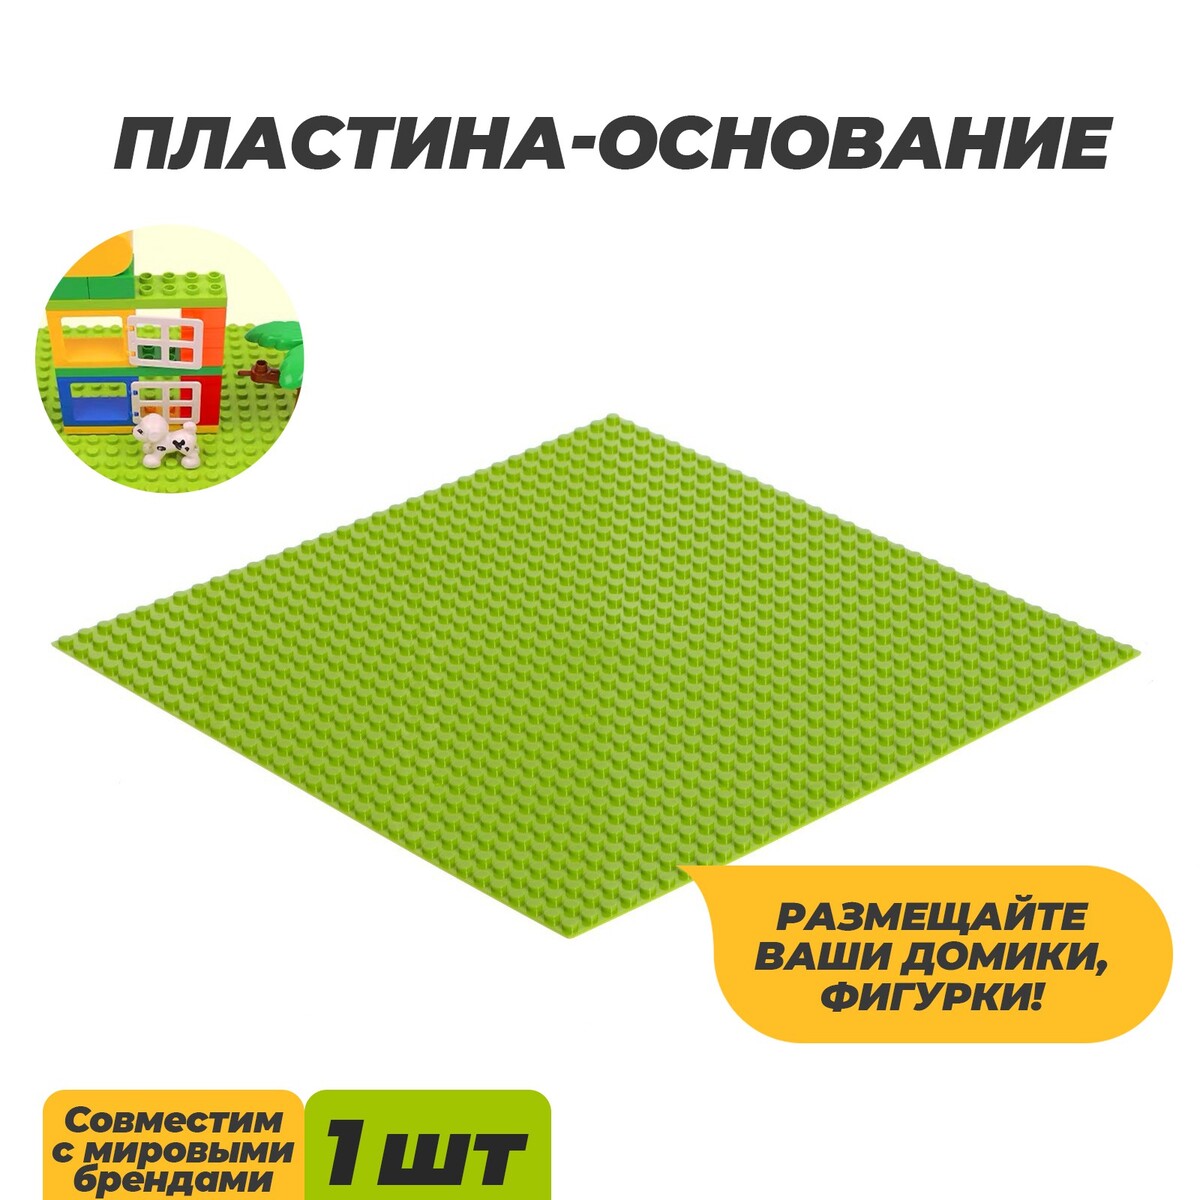 Пластина-основание для конструктора, 25,5 × 25,5 см, цвет салатовый пластина основание для конструктора 40 × 40 см серый